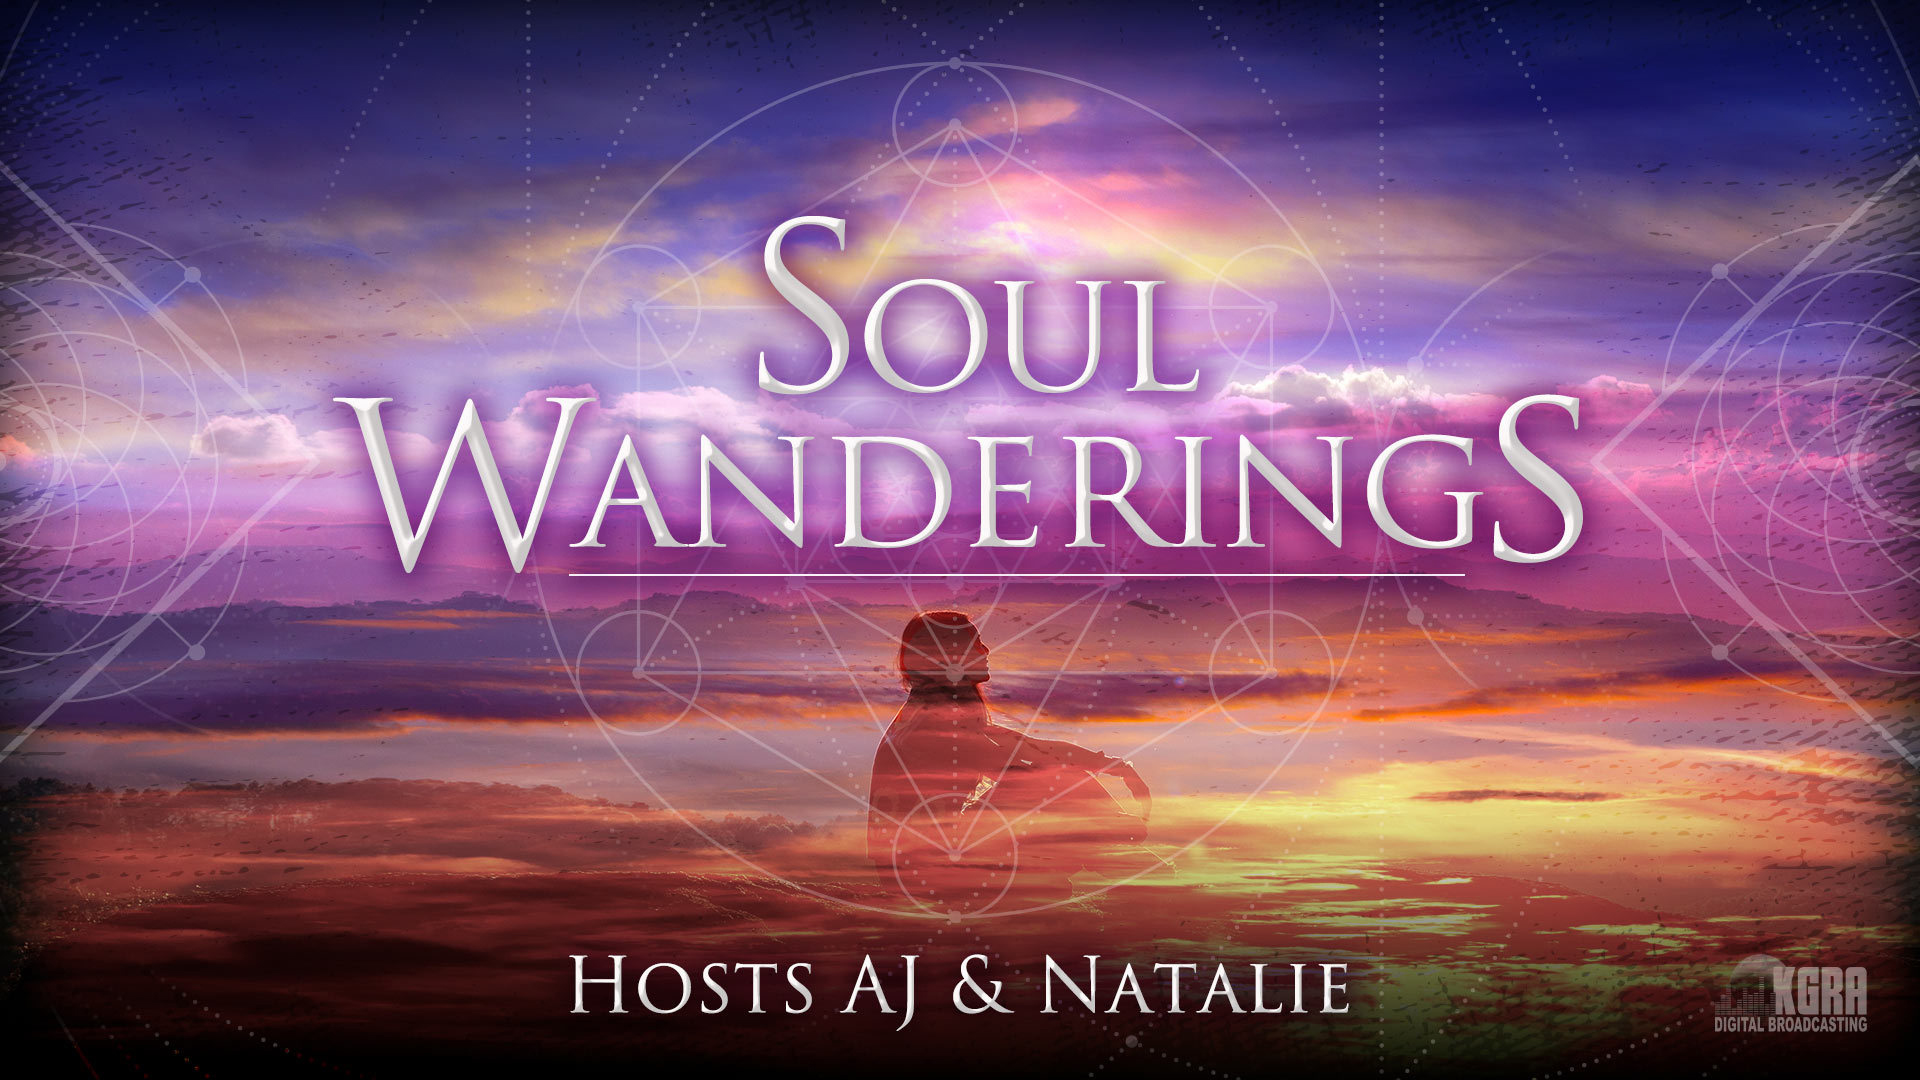 Soul Wanderings - KGRA Digital Broadcasting